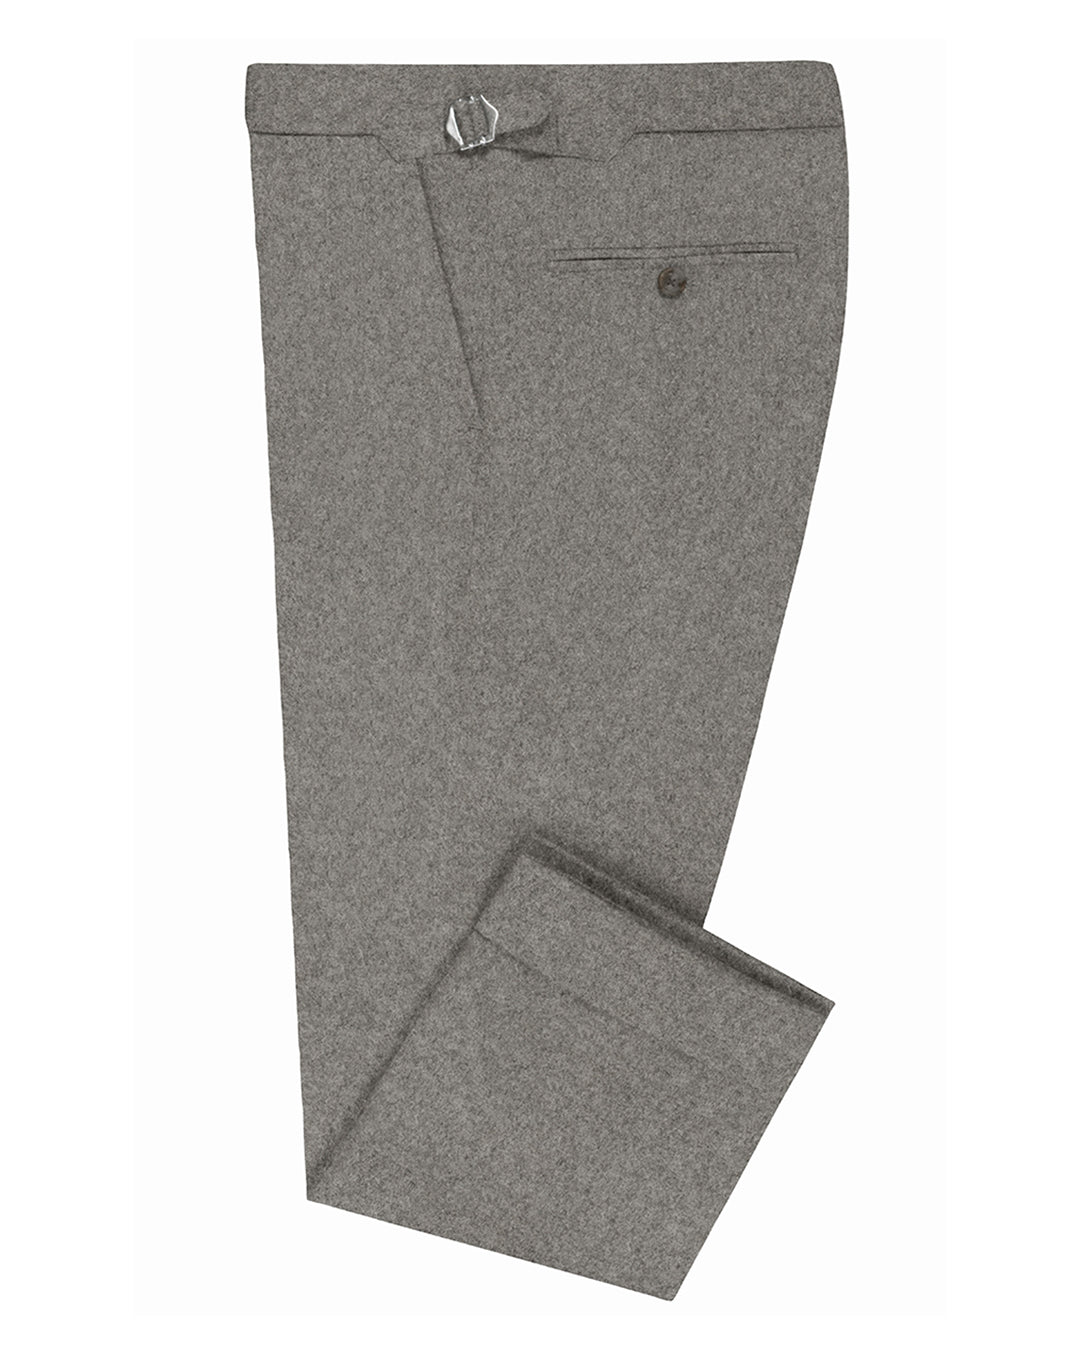 Minnis Flannel: Light Grey Twill Pants